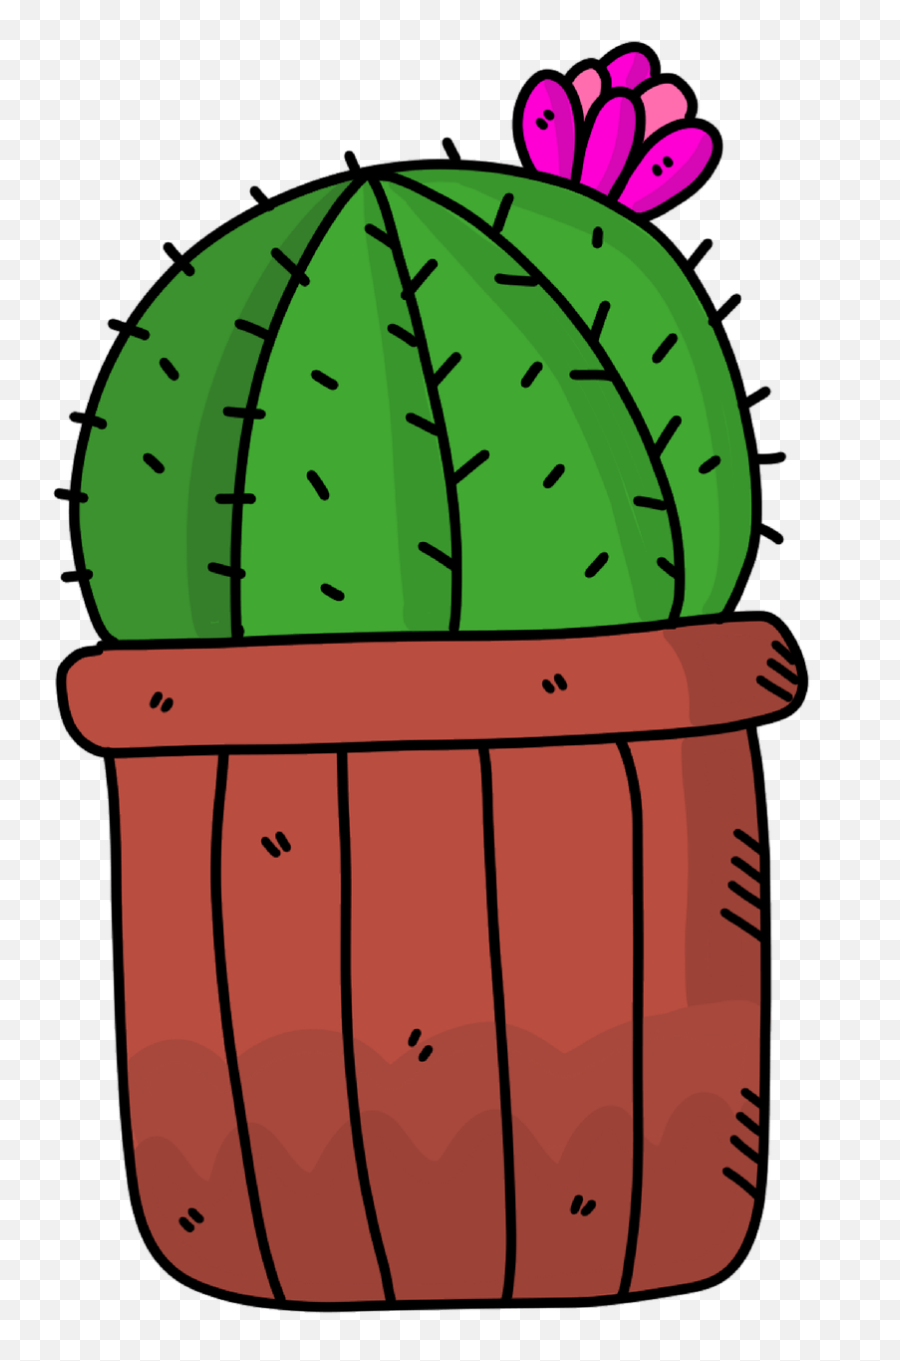 Succulents Cartoon Clipart - Cartoon Barrel Cactus Emoji,Succulents Clipart